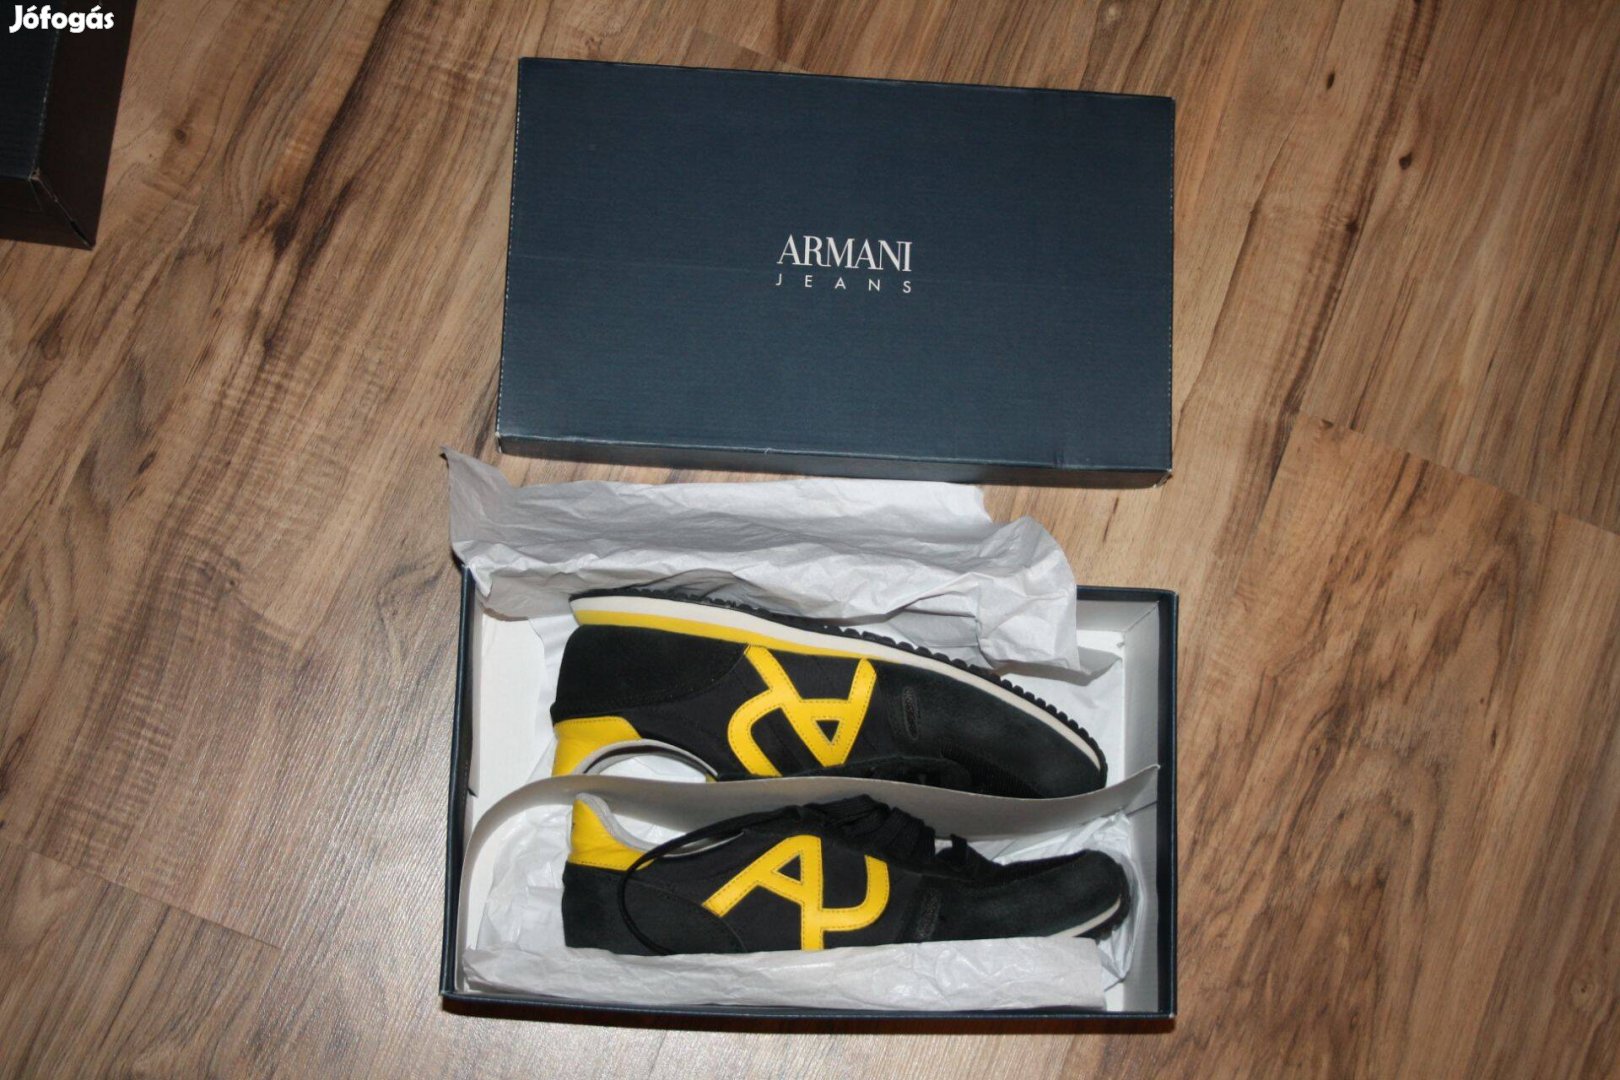 Armani Jean eredeti férfi cipő 41 es! eredeti doboz